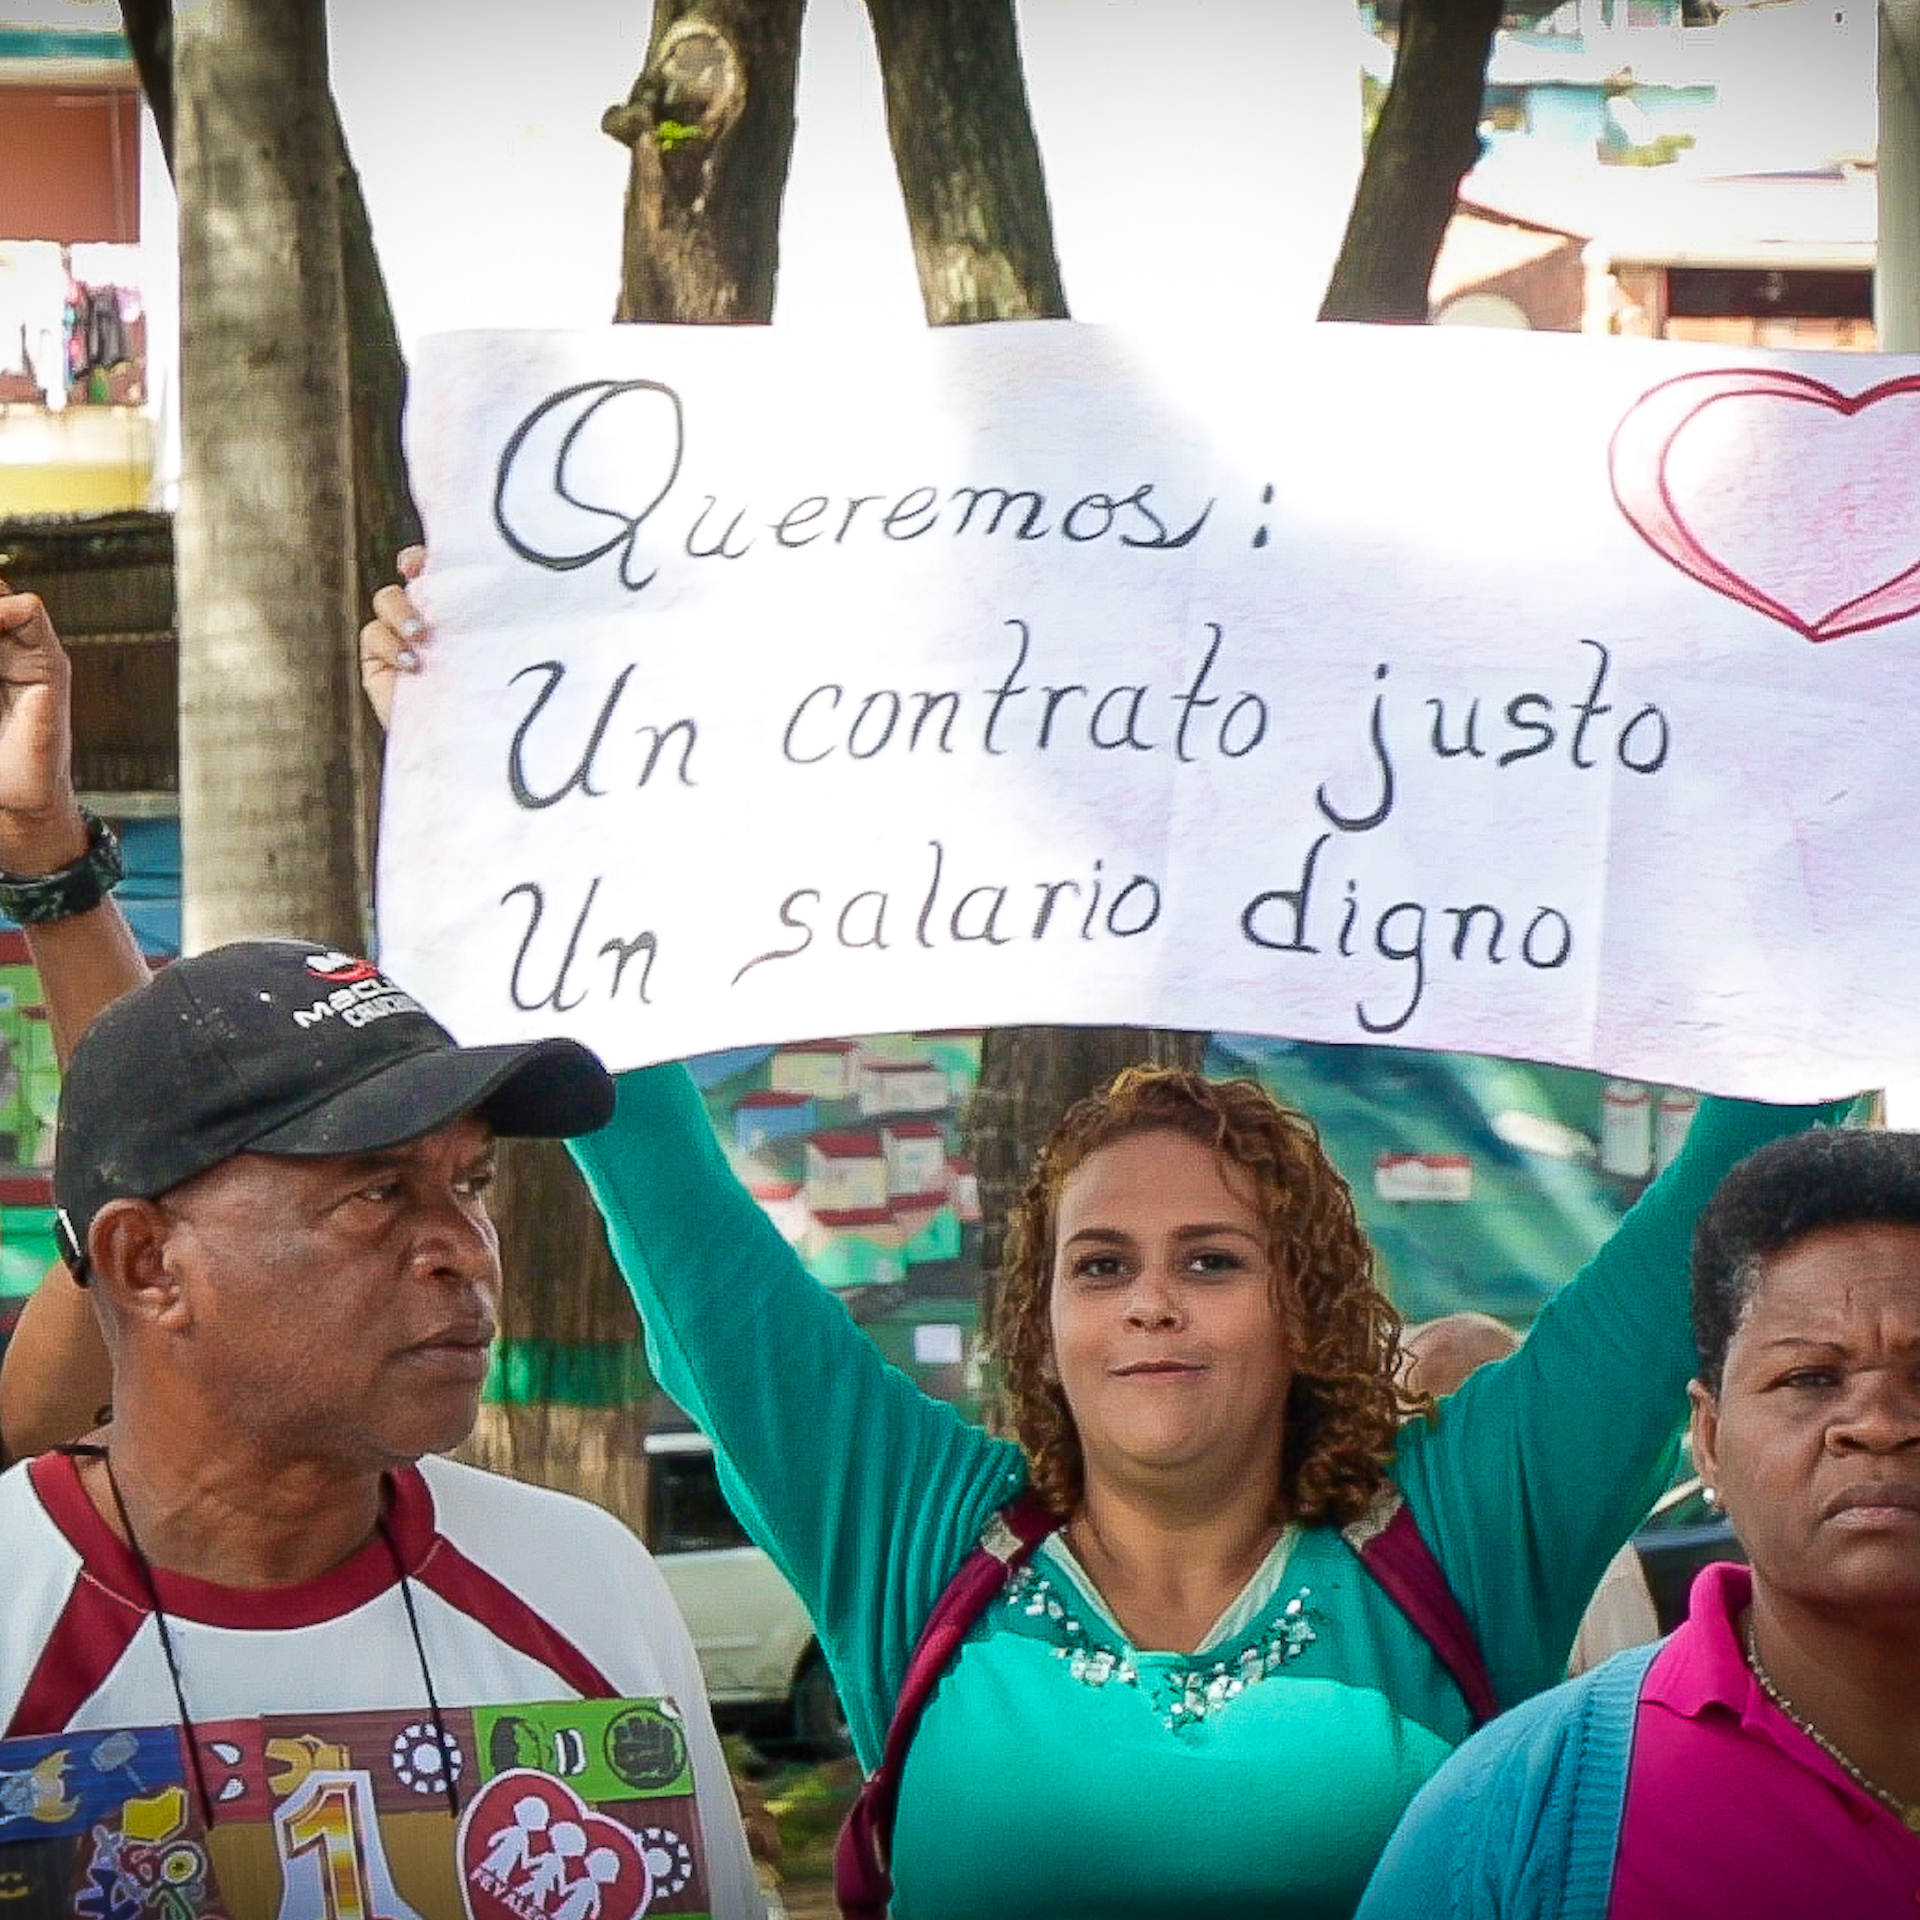 Venezuelan teachers protesting over low salaries